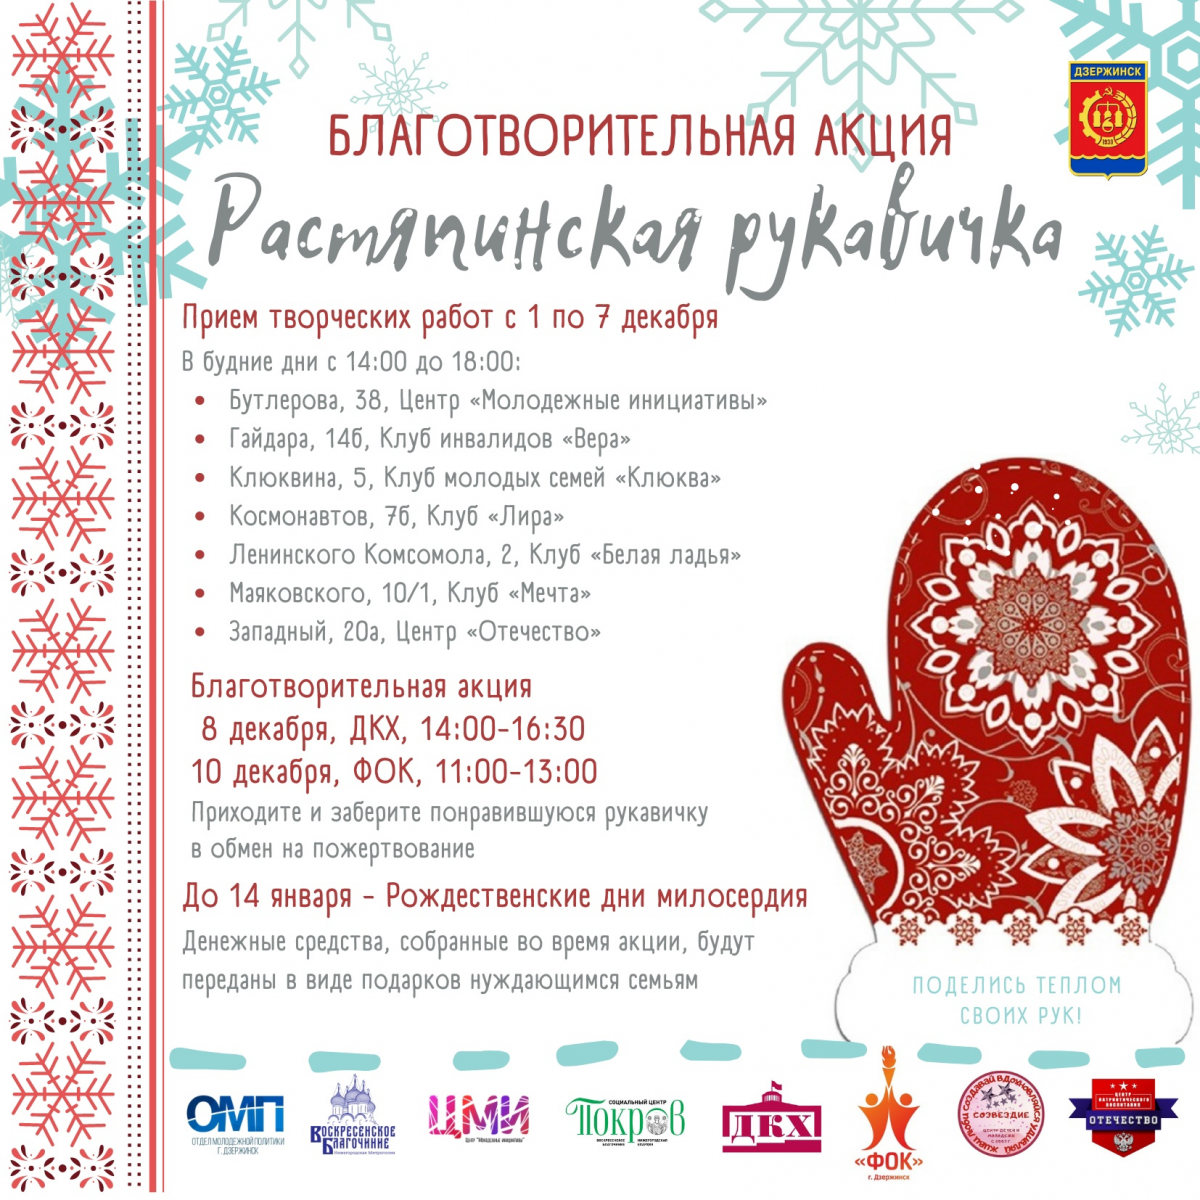 Благотворительная акция «Растяпинская рукавичка» пройдёт в Дзержинске